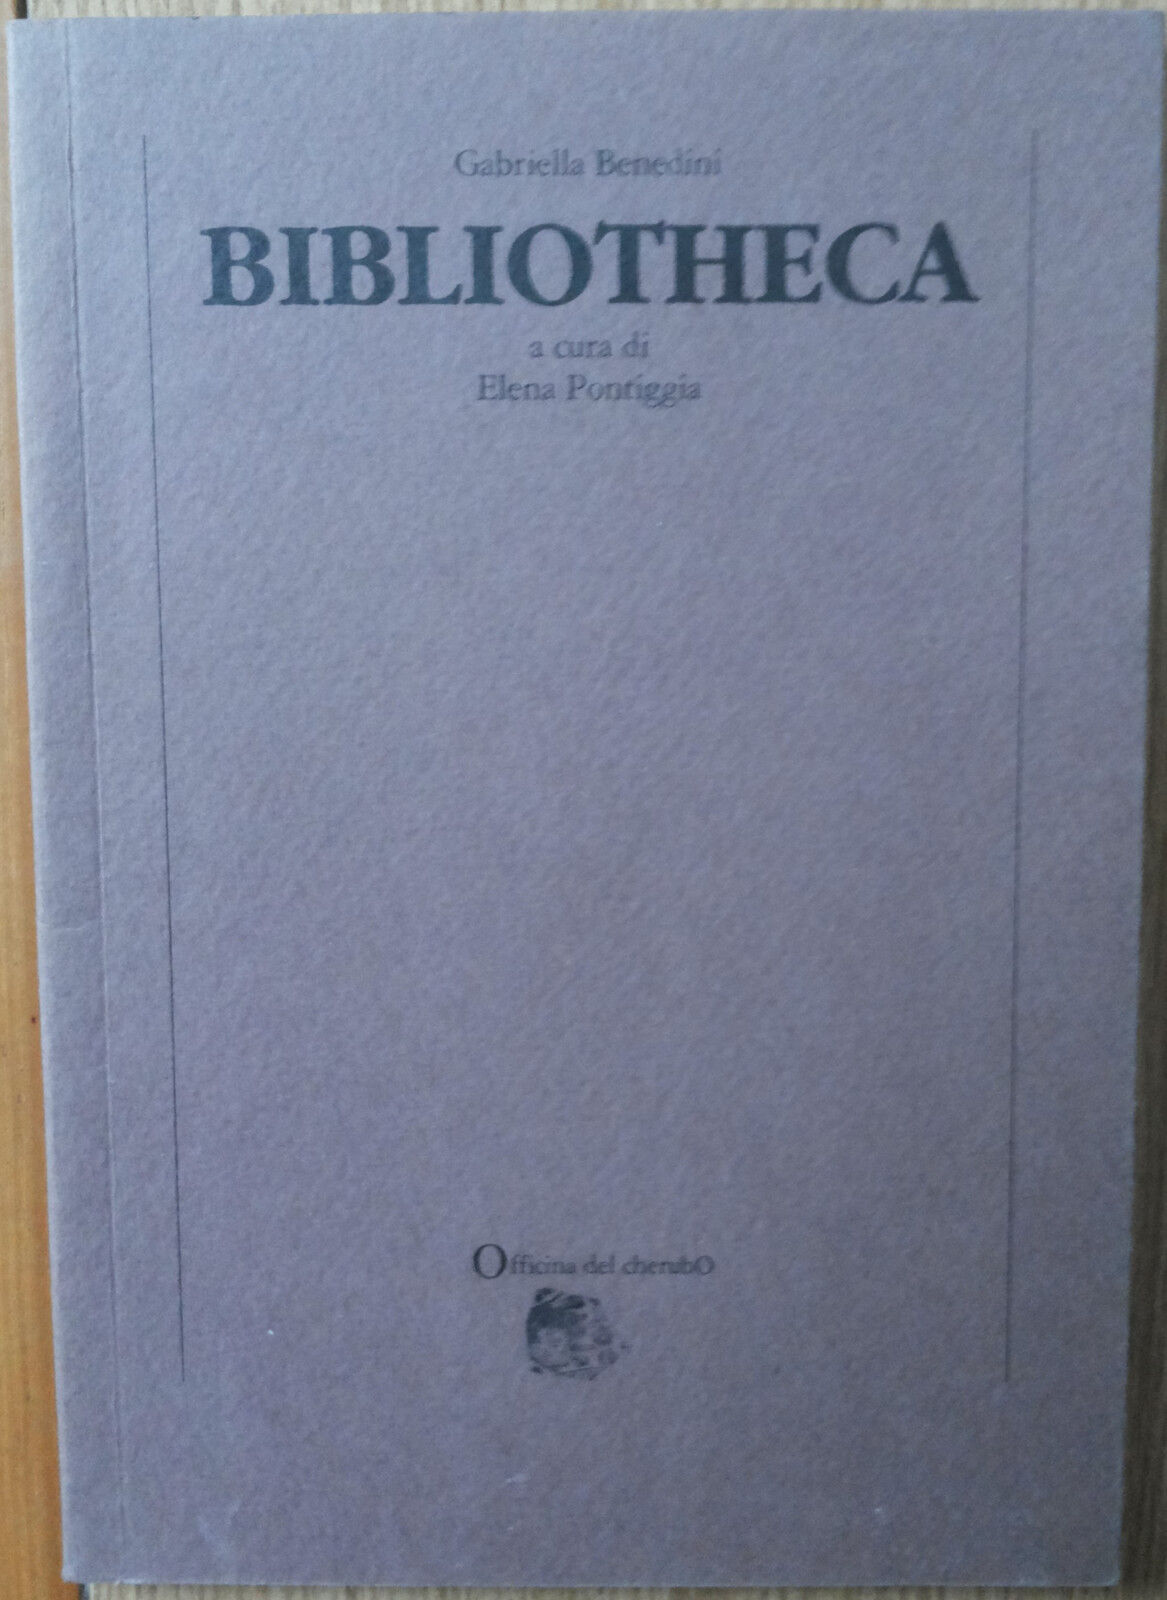 Bibliotheca - Benedini - Officina del cherubo,1990 - R